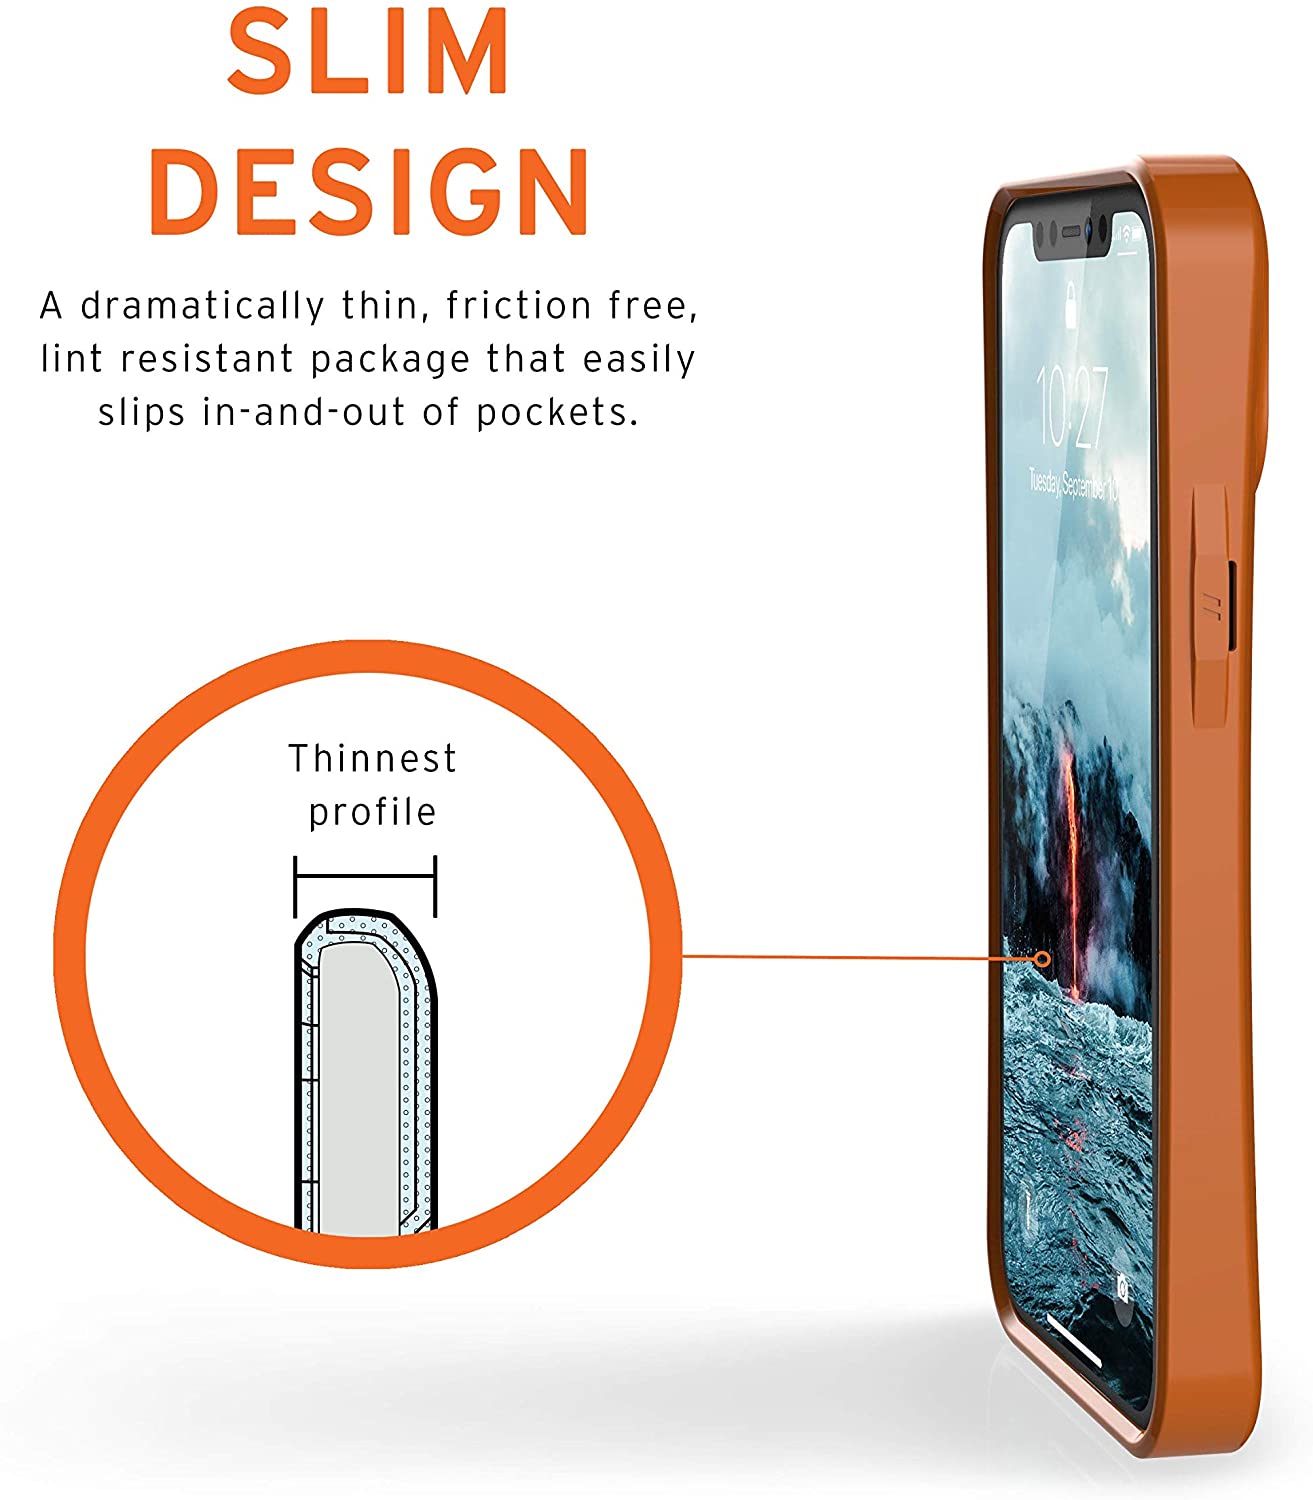 UAG iPhone 12 mini Outback Bio Case - Orange